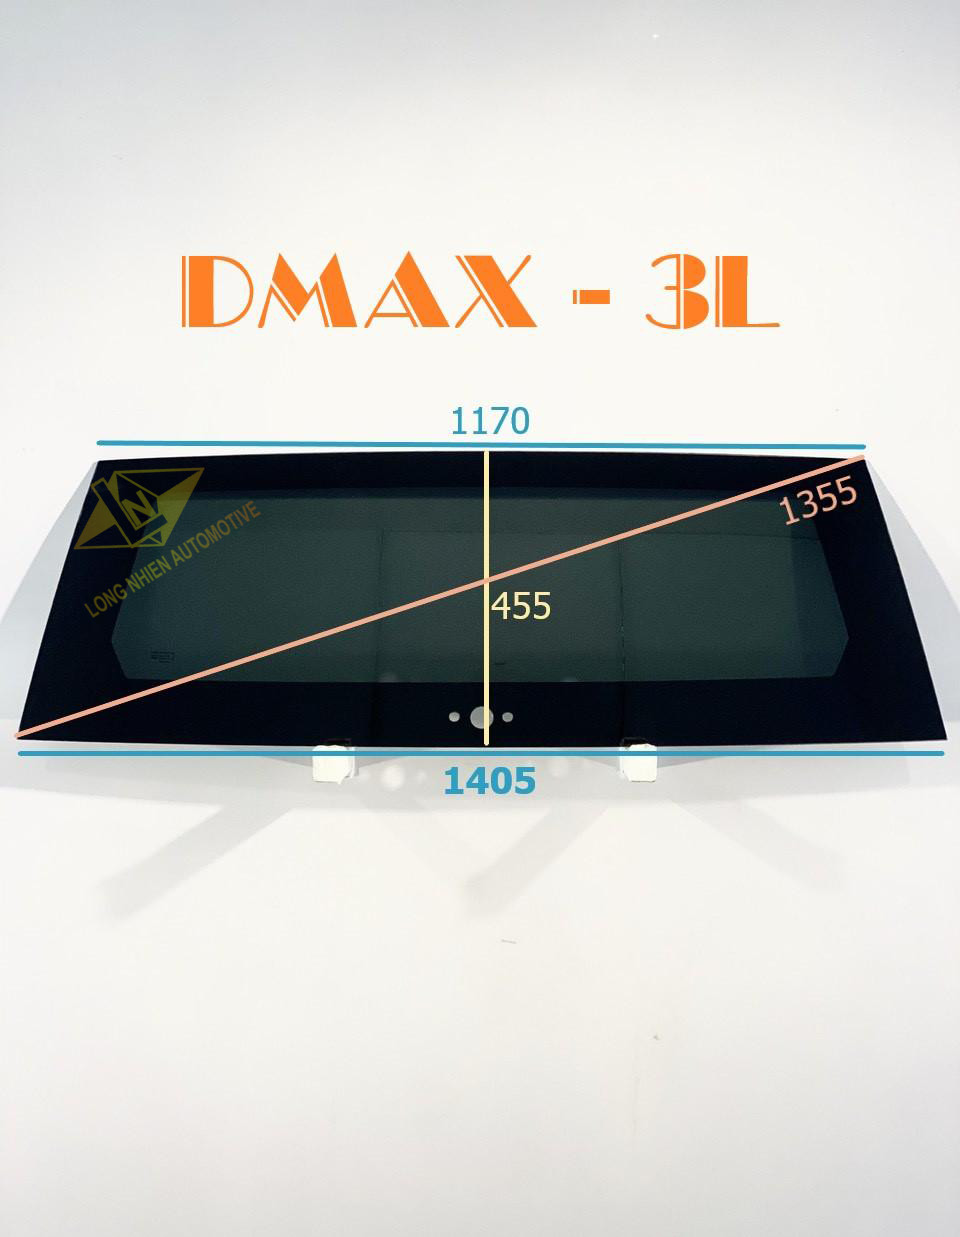 CỐP DMAX -  3L (455x1405)